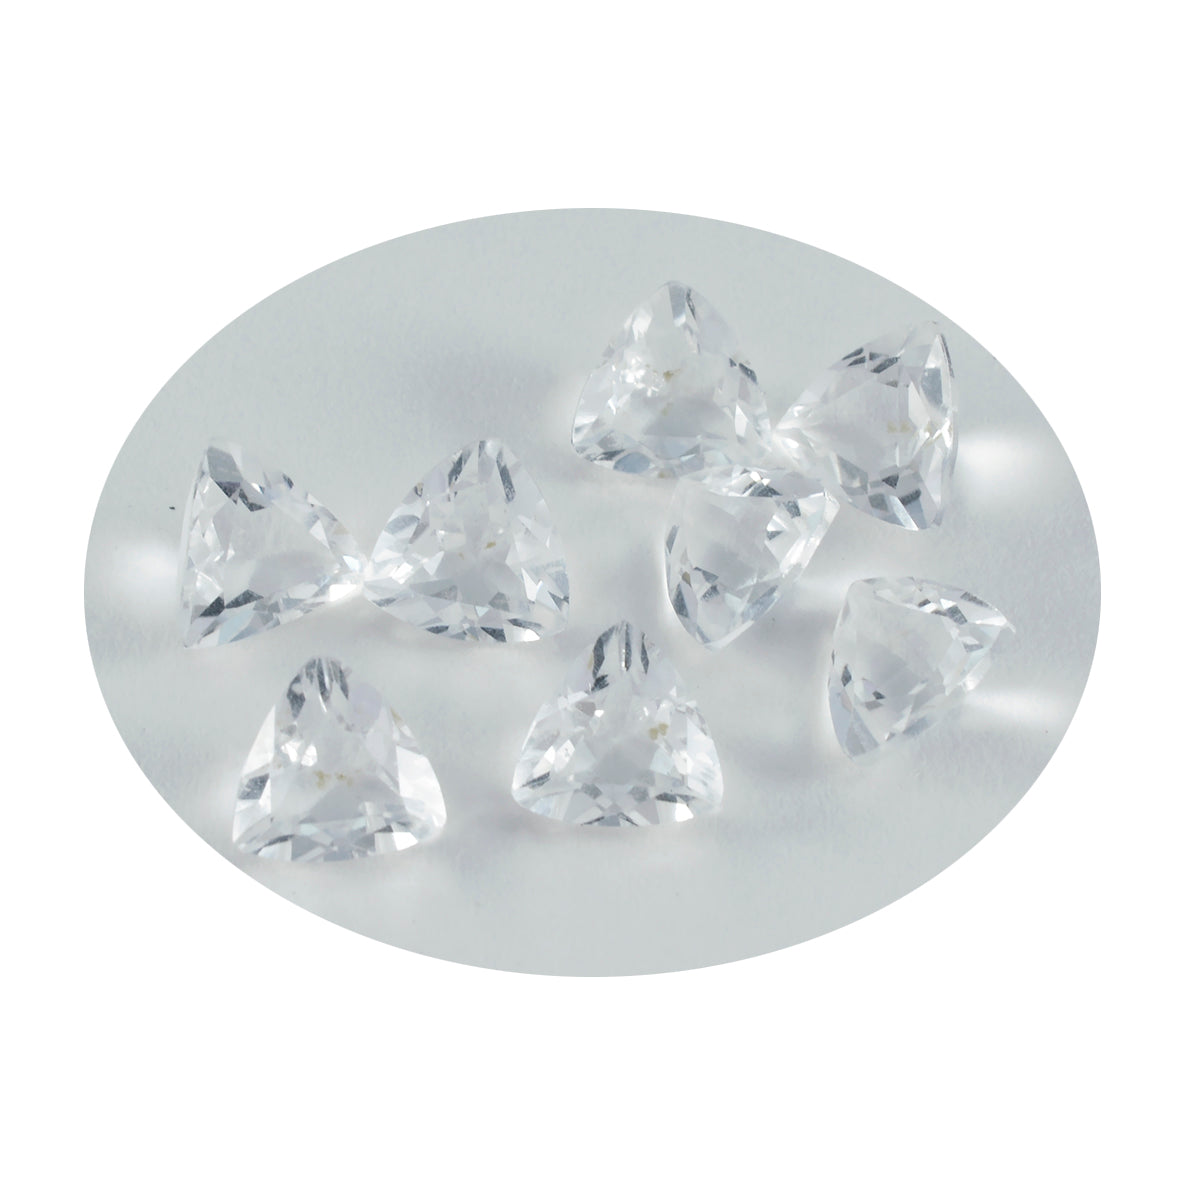 riyogems 1 шт., белый кристалл кварца, граненый 8x8 мм, форма триллиона, потрясающее качество, свободный драгоценный камень